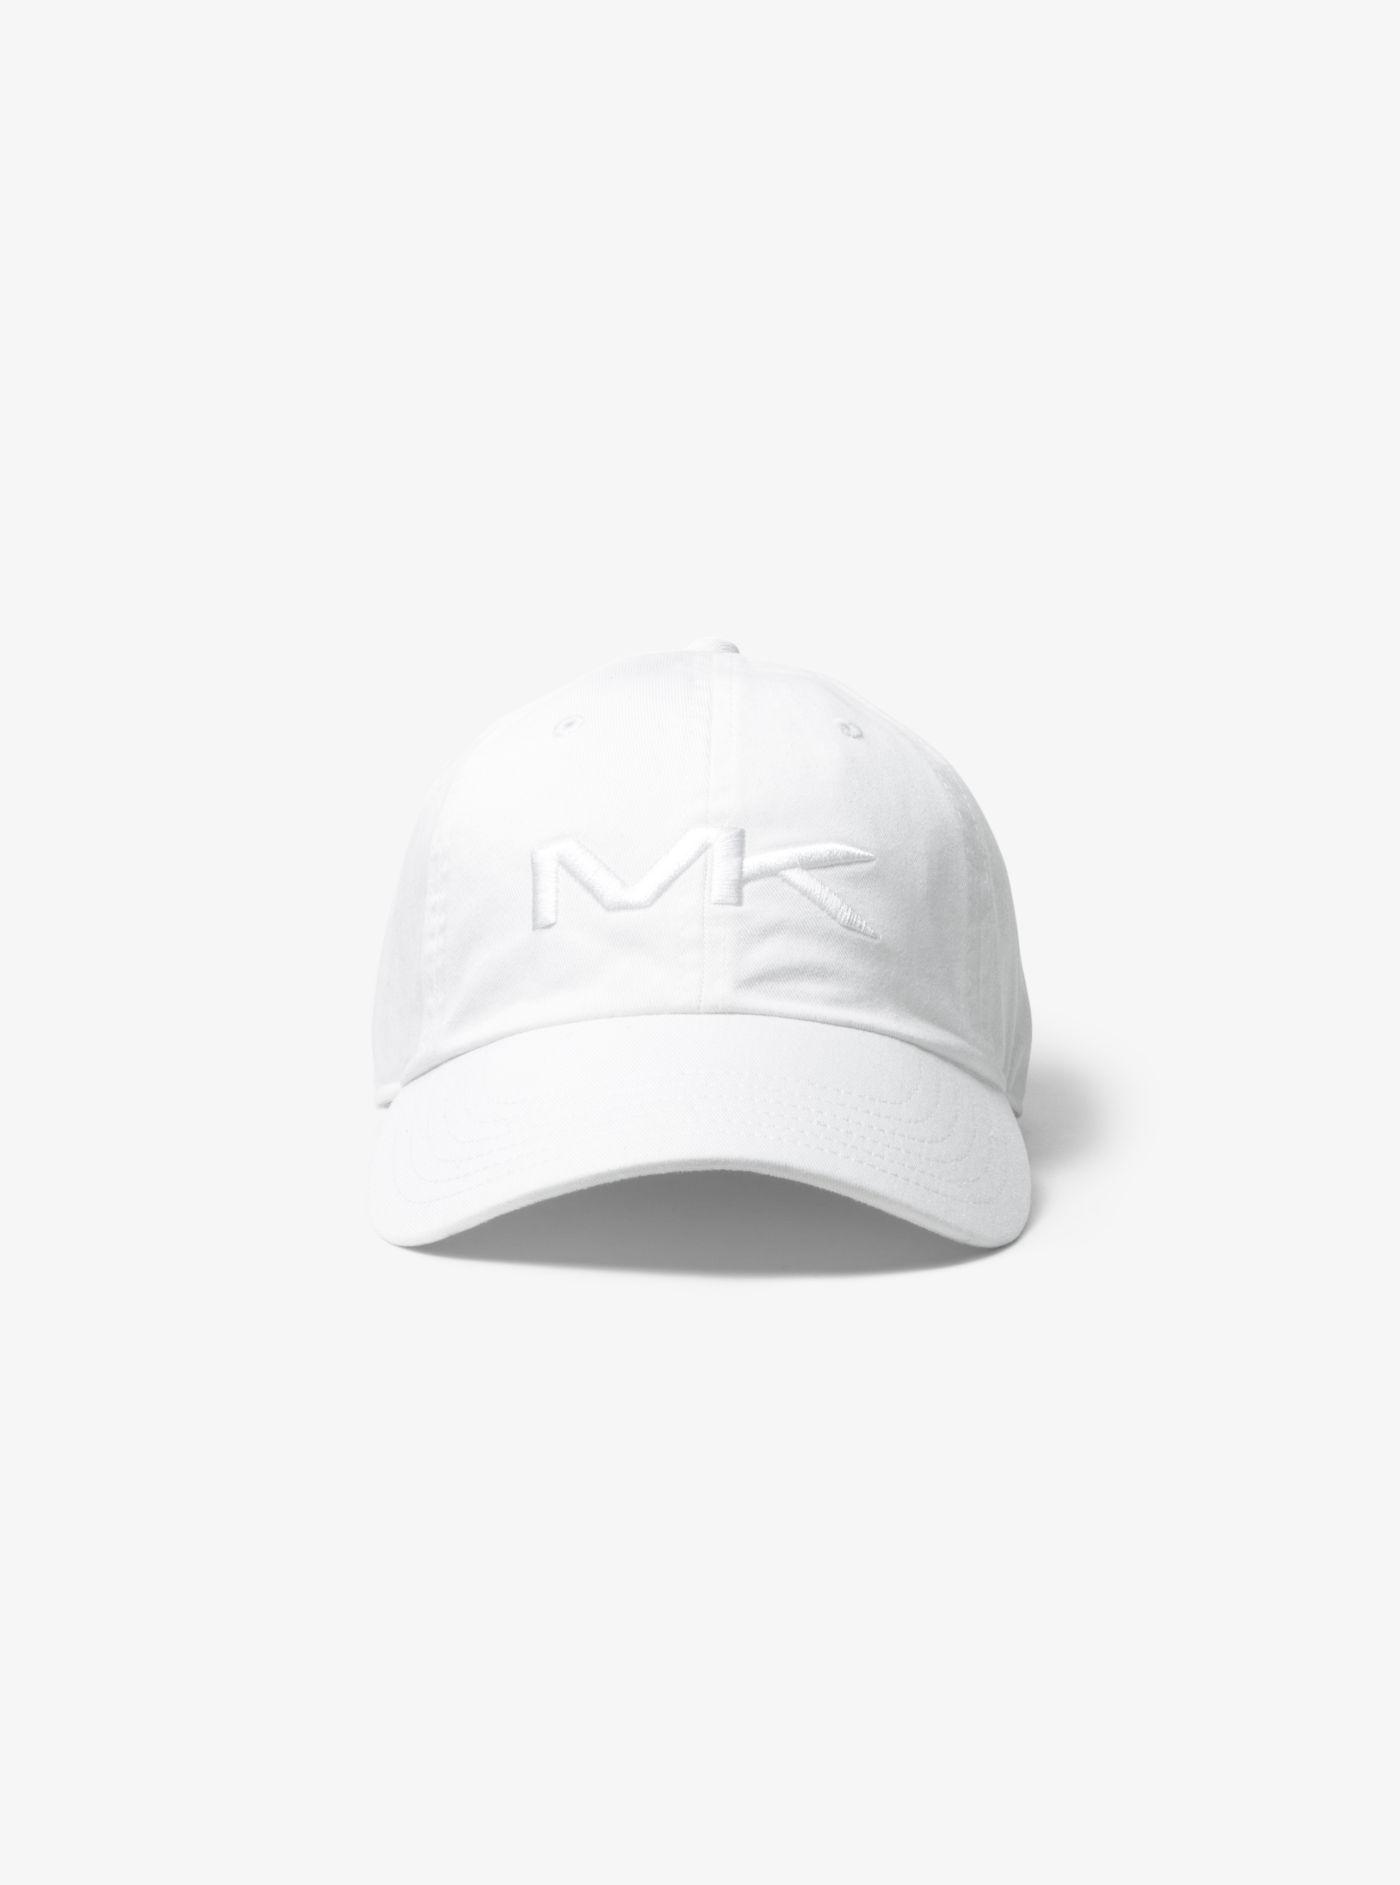 Michael Kors Logo Cotton Baseball Hat in White for Men - Lyst